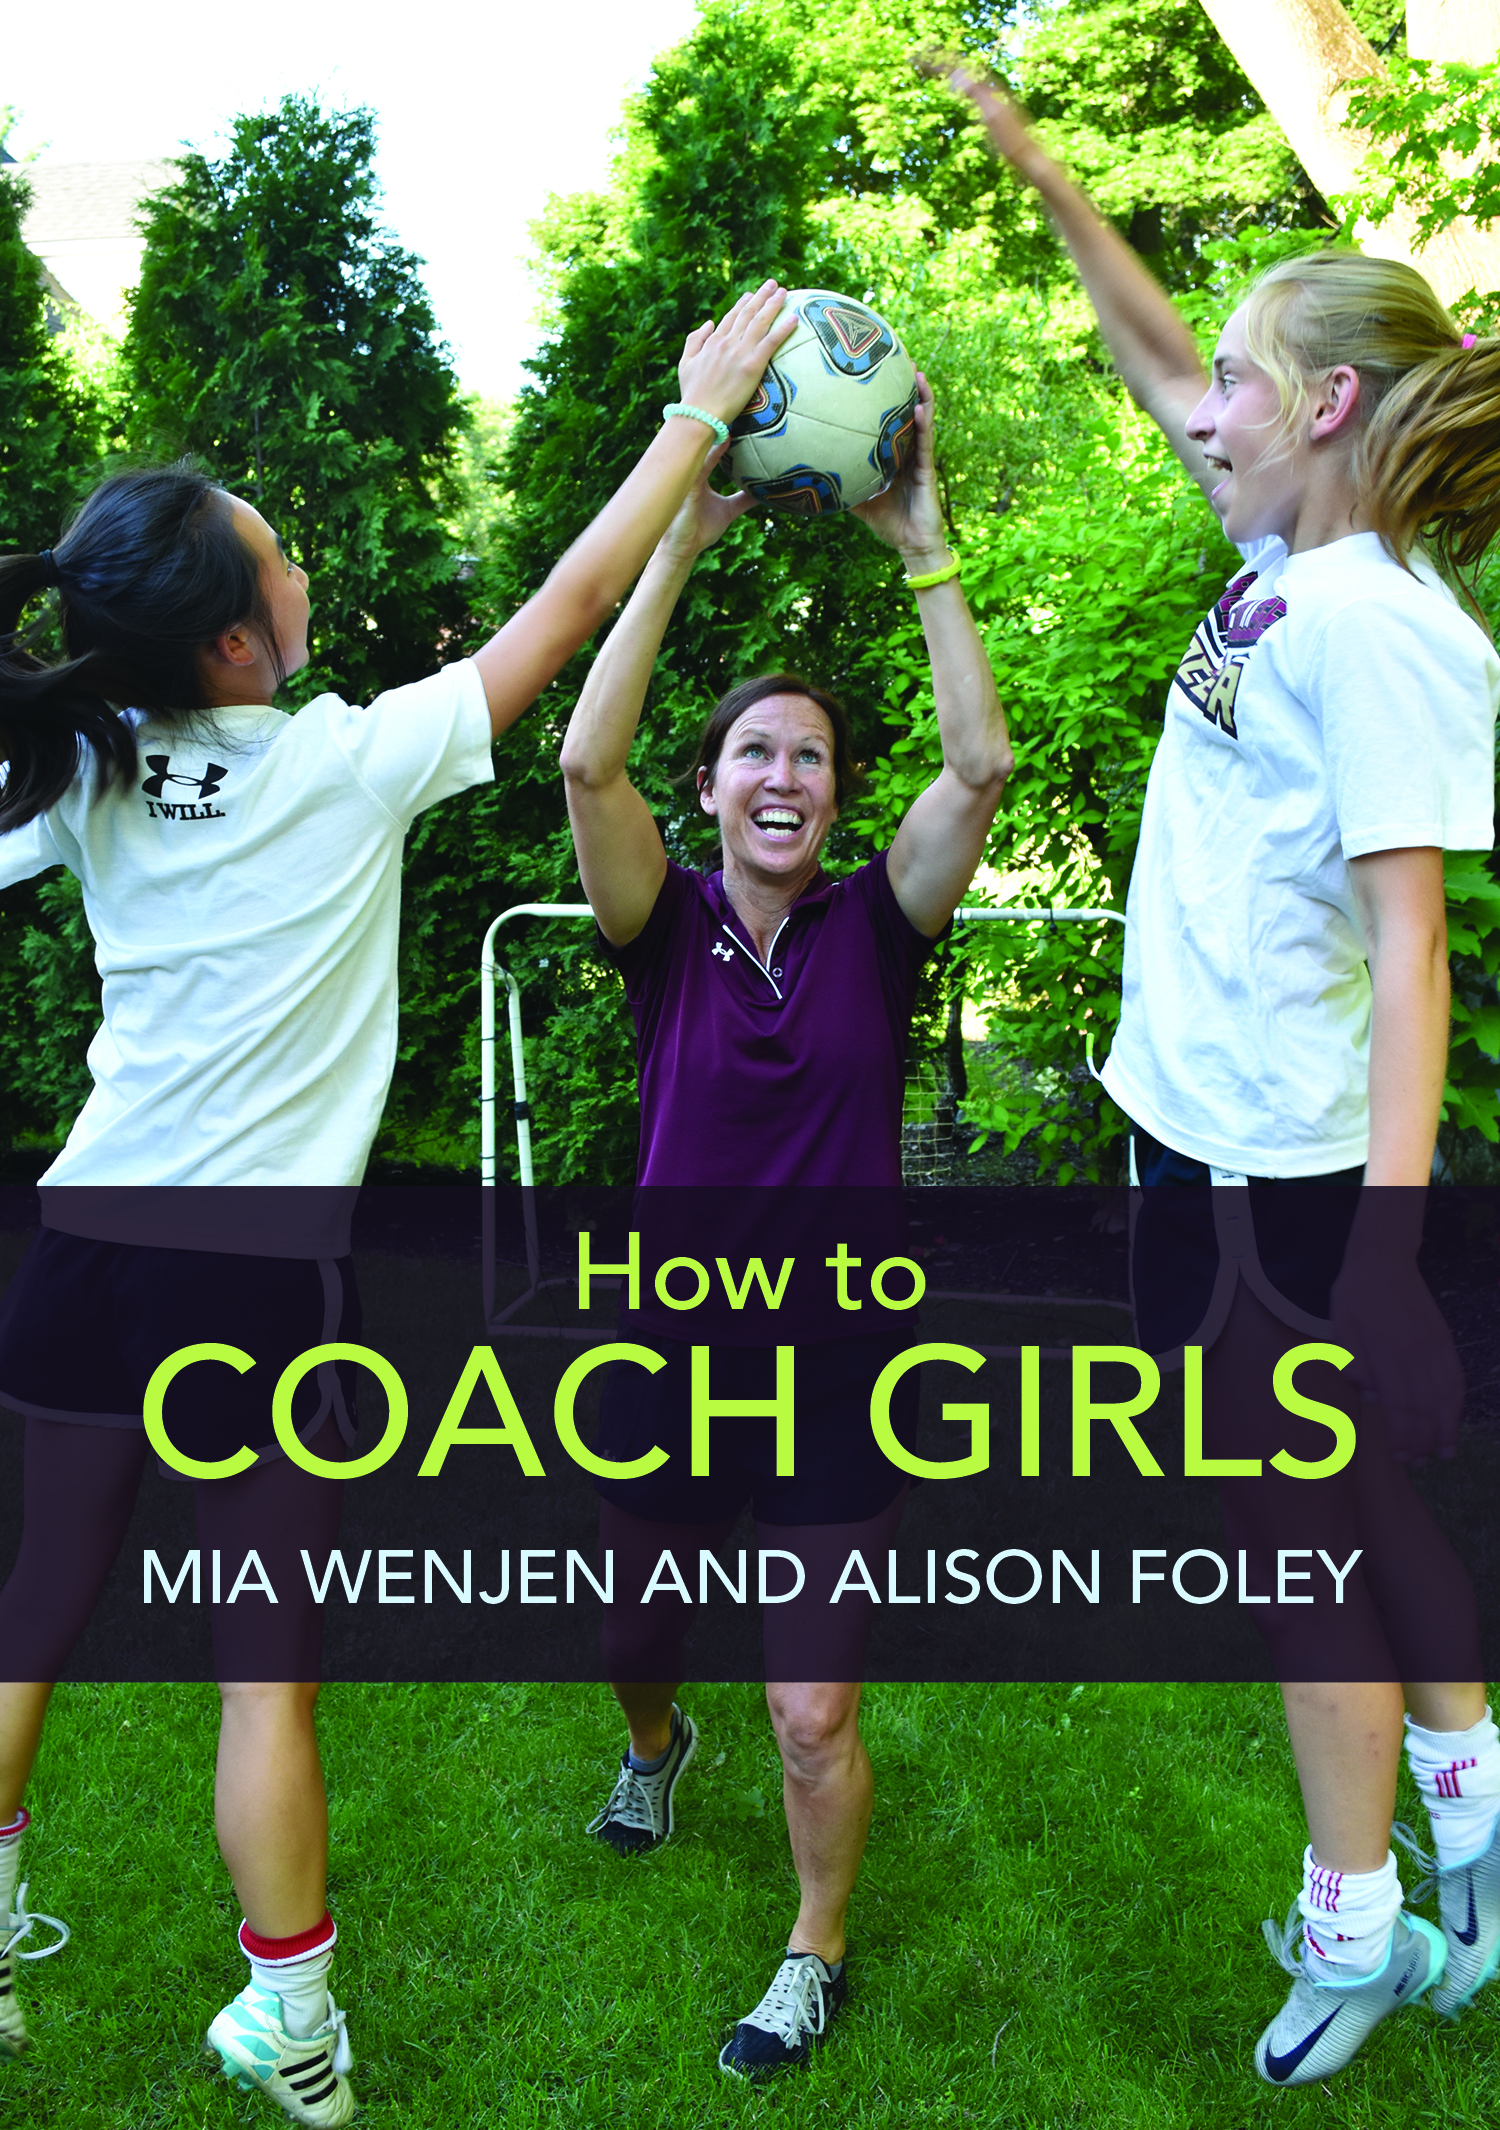 How To Coach Girls Alison Foley Mia Wenjen coaching book for girls